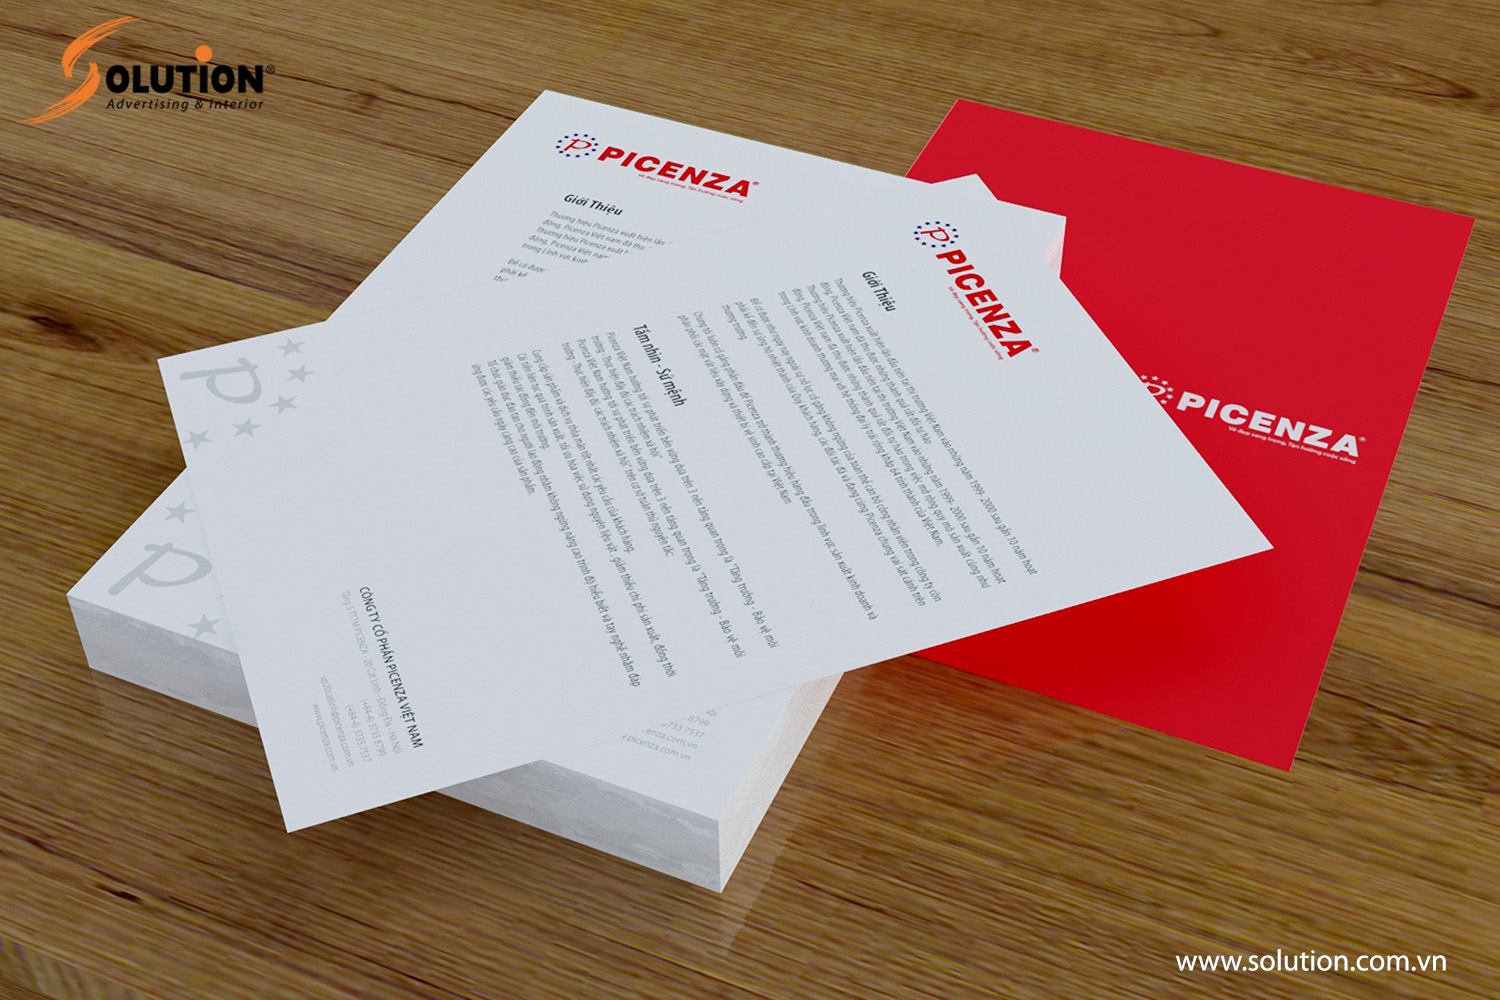 Mẫu thiết kế tiêu đề thư trong bộ nhận diện thương hiệu Picenza